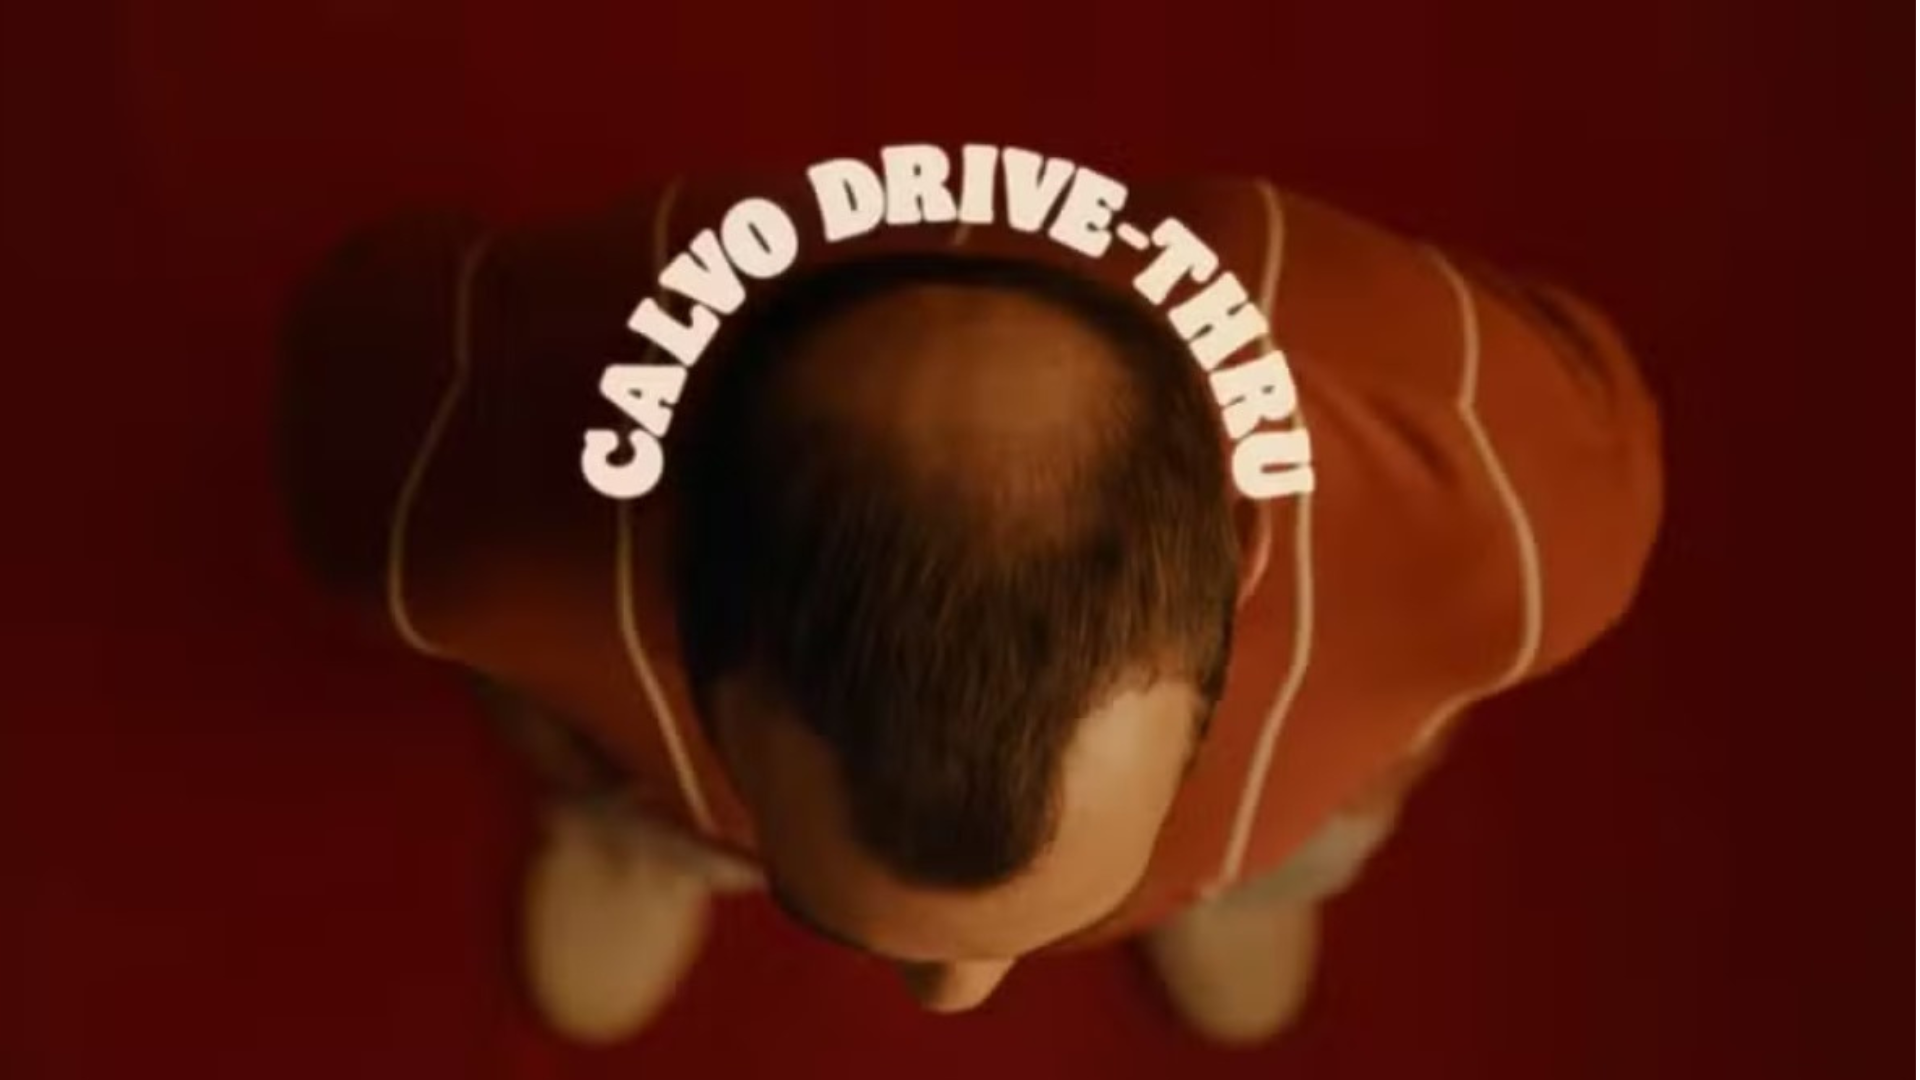 Burger King lança campanha ‘Calvo Drive-Thru’ e presenteia clientes calvos com Whopper 